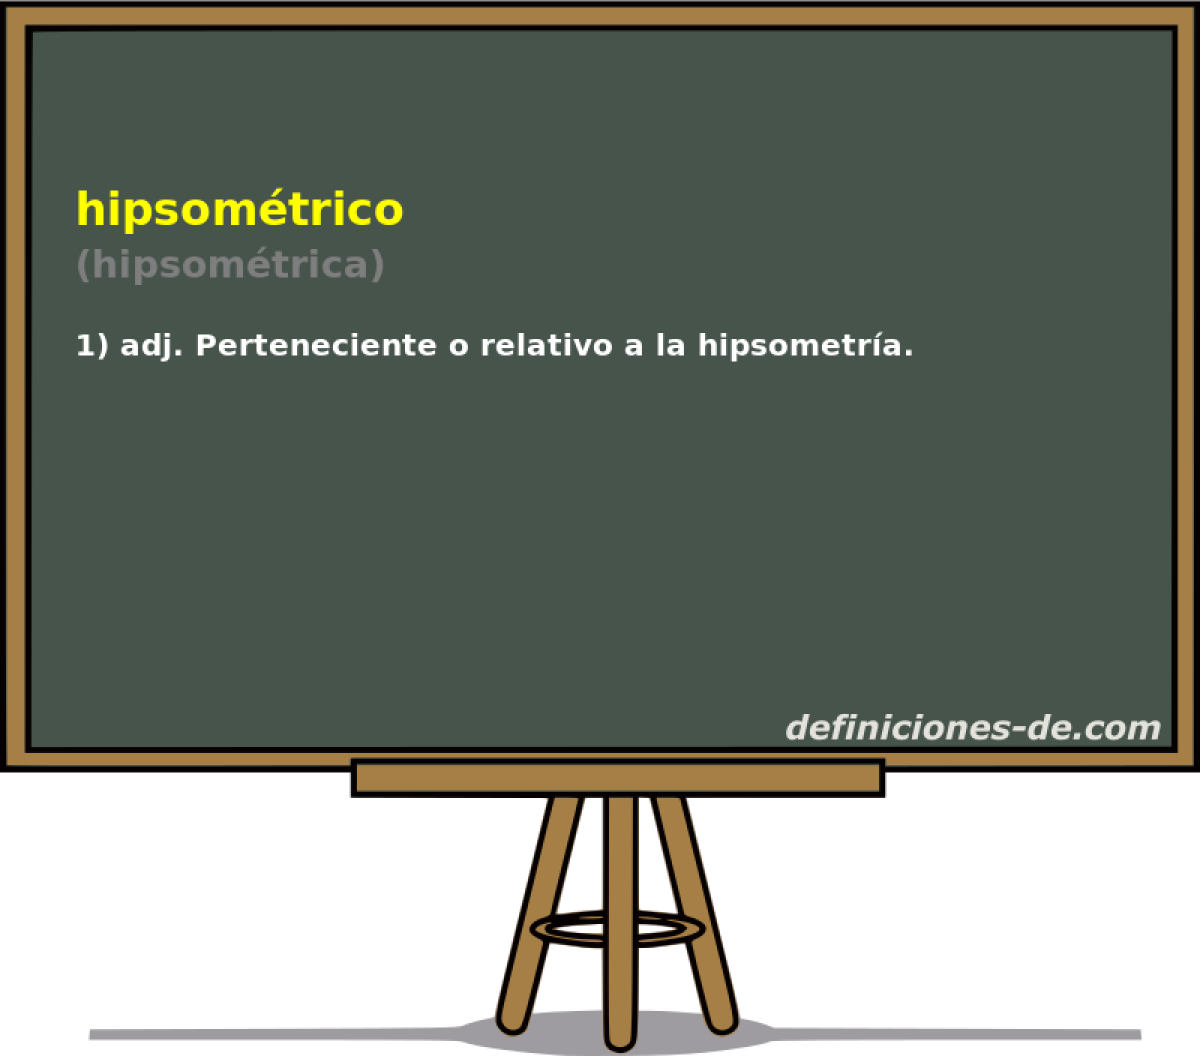 hipsomtrico (hipsomtrica)